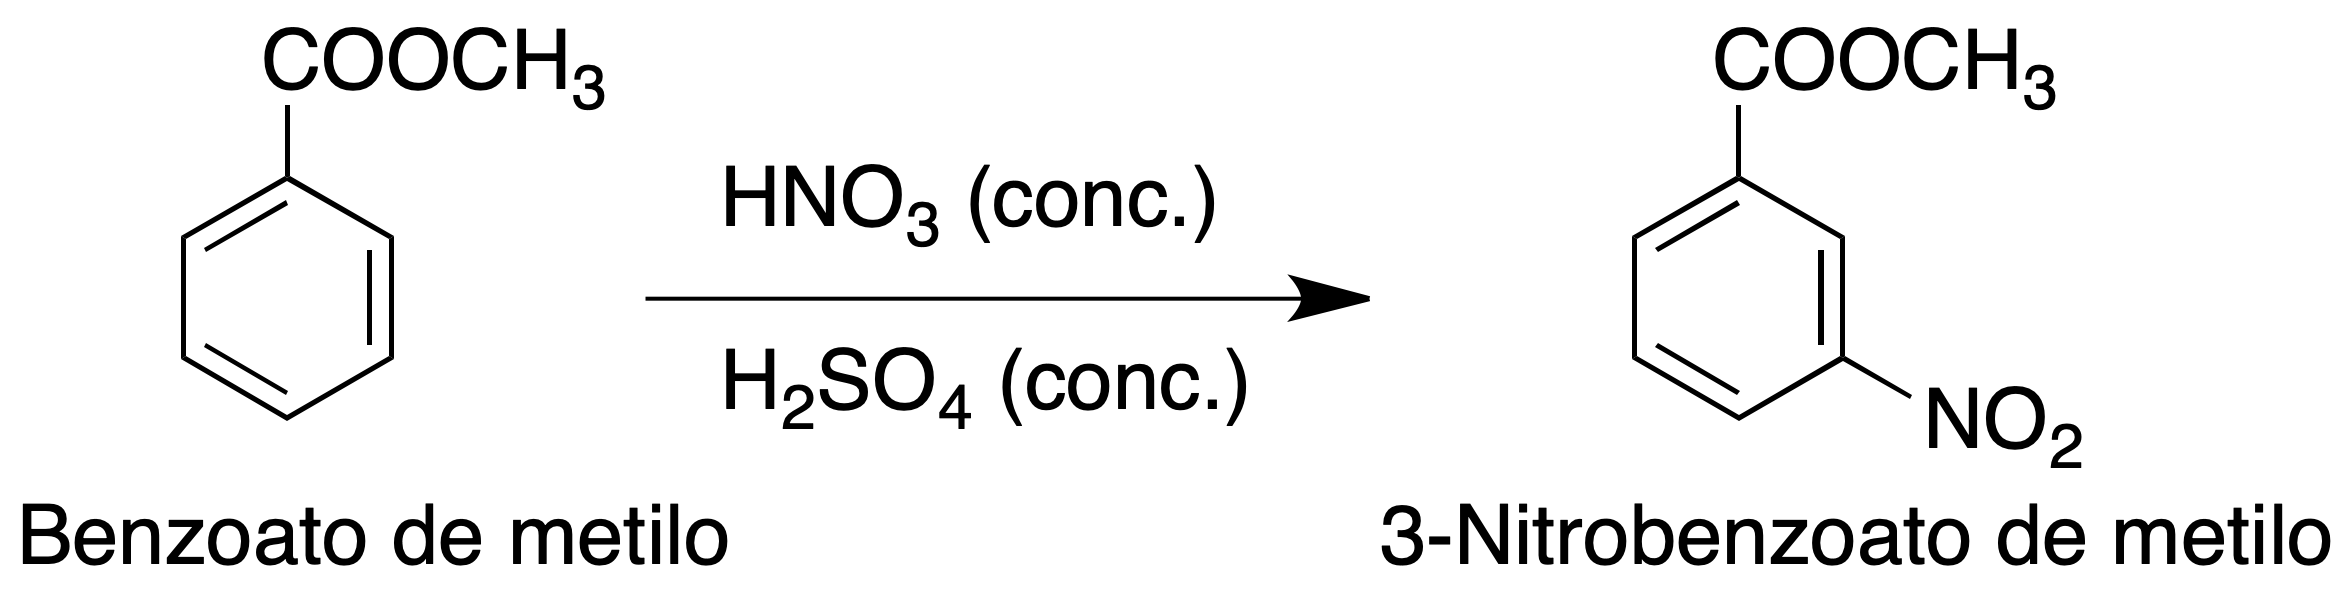 methylbenzoate nitration reaction methyl 3-nitrobenzoate QPJVMBTYPHYUOC-UHFFFAOYSA-N